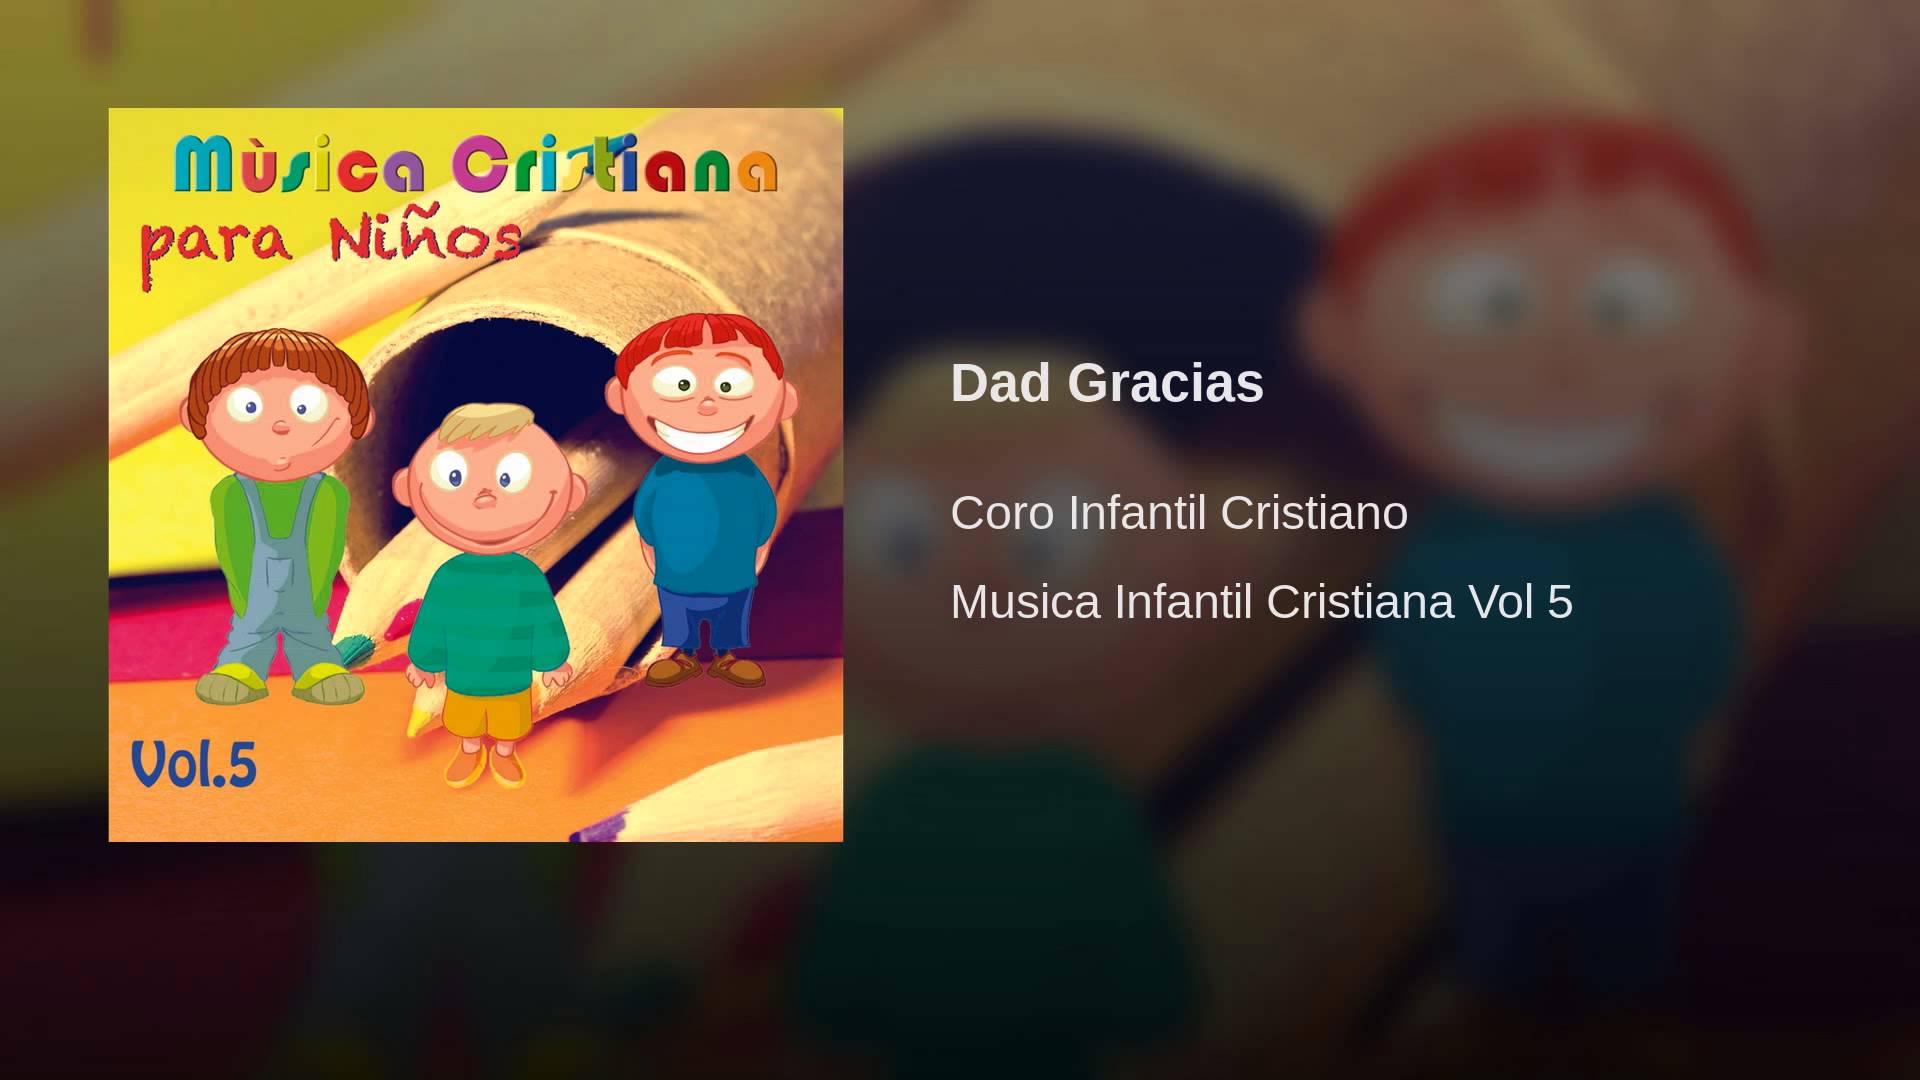 Dad Gracias - YouTube